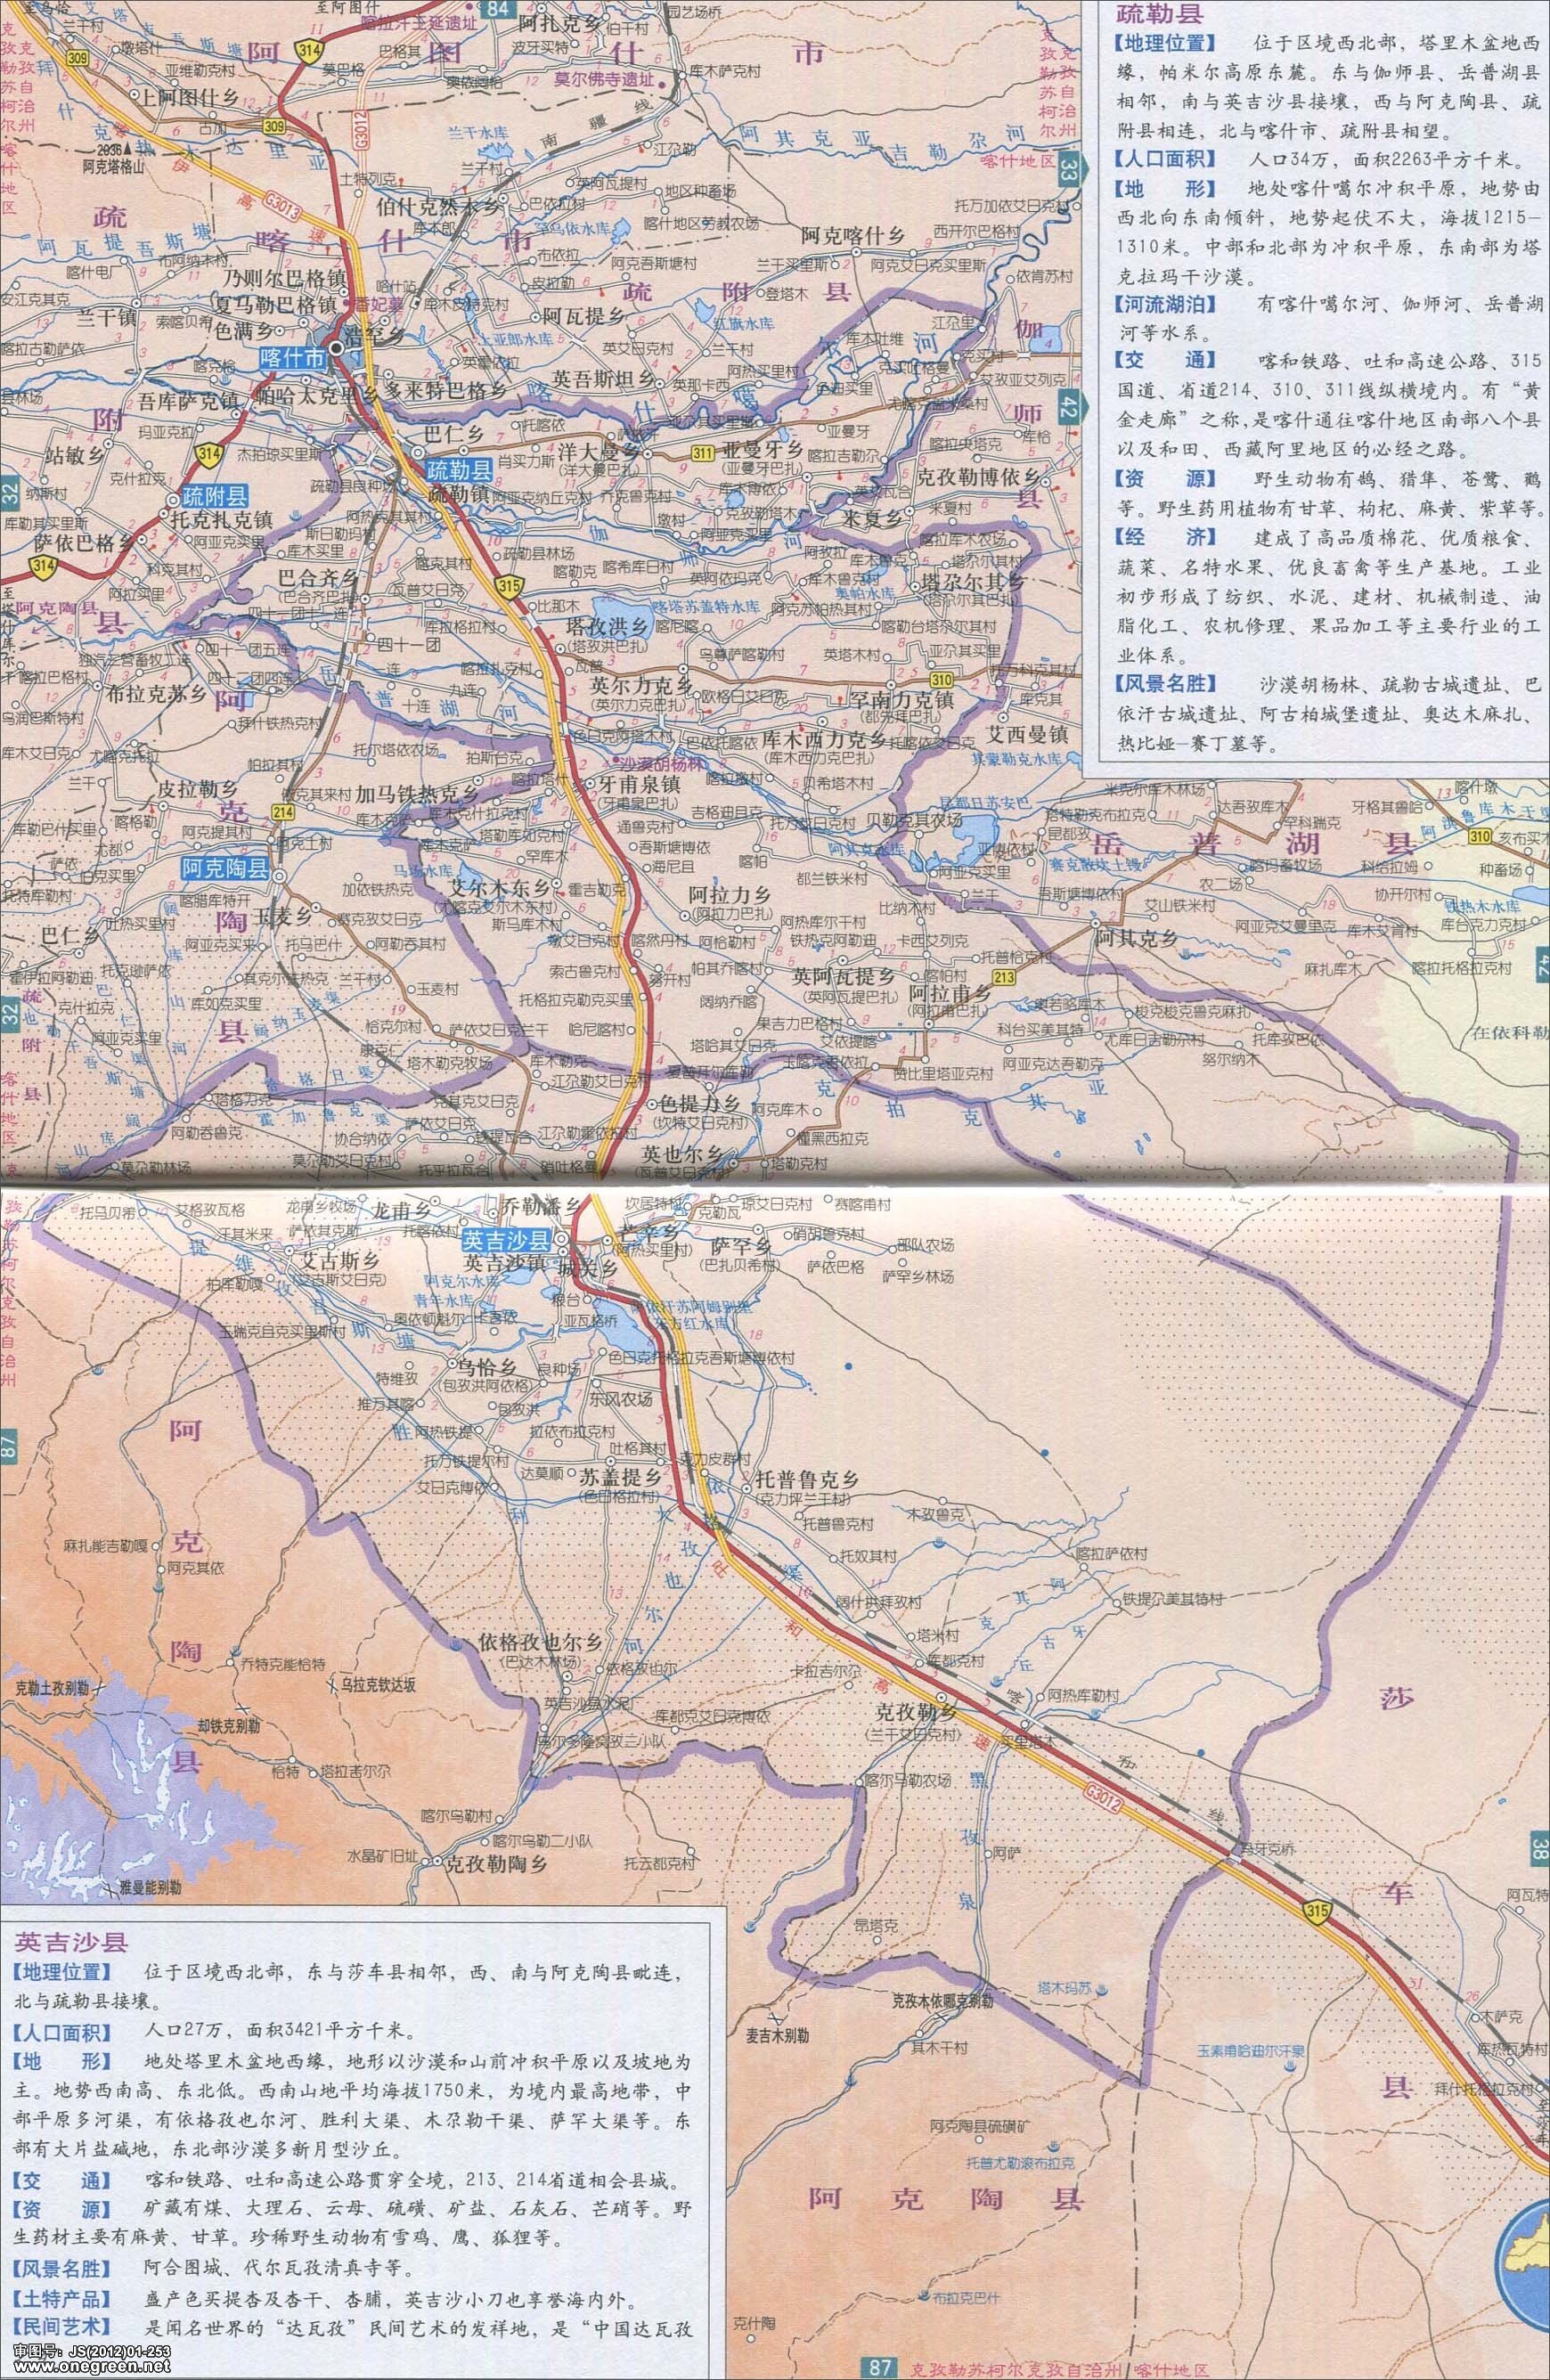 分类: 喀什 上一张地图: 莎车县泽普县地图  | 喀什 |  下一张地图图片